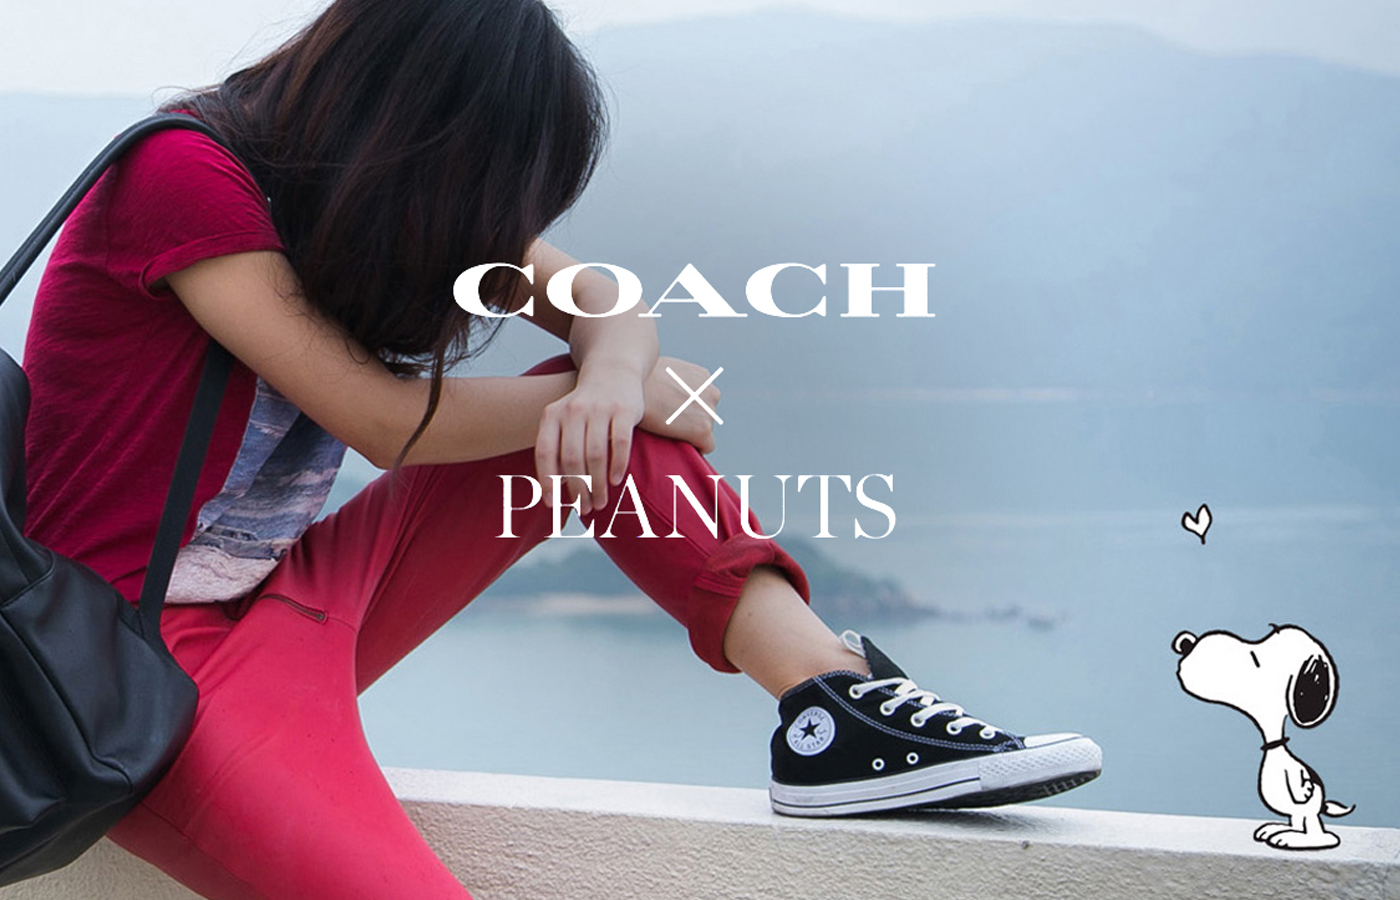 Coach X Peanuts